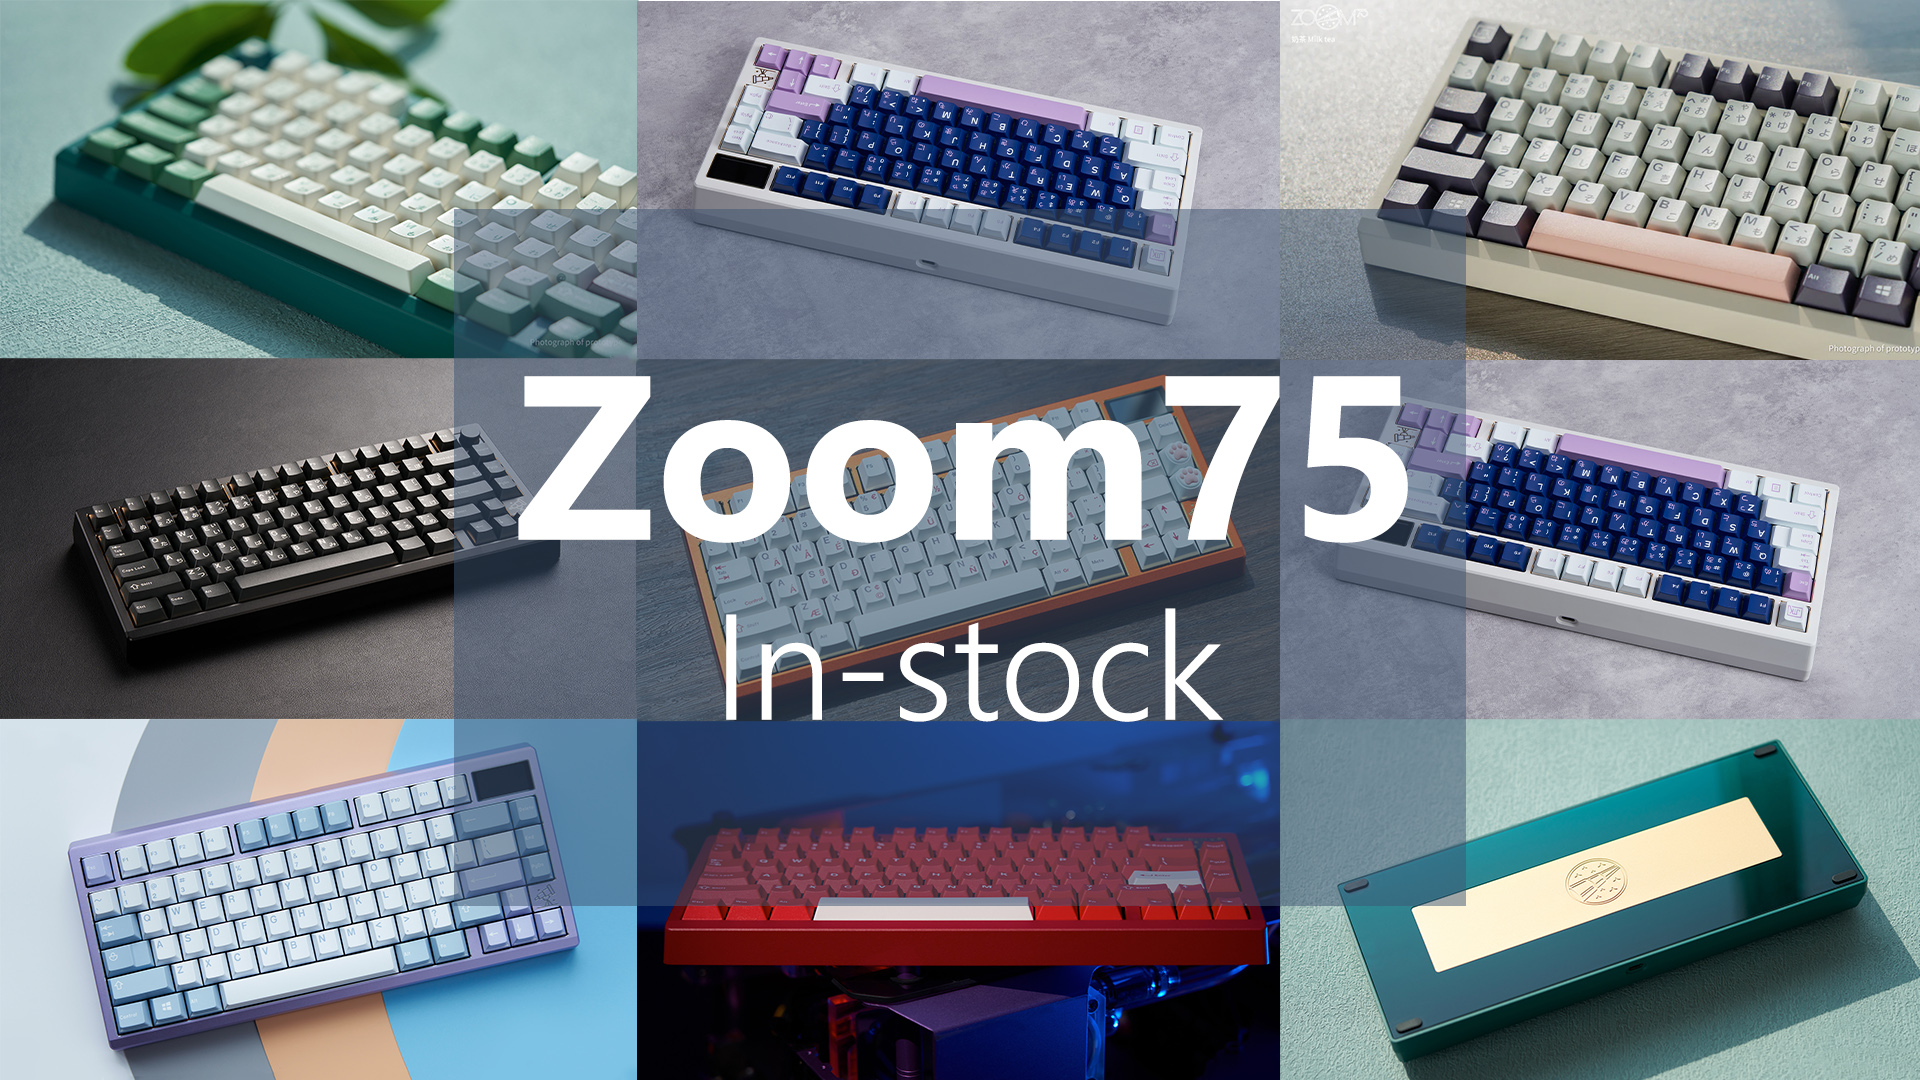 [In Stock] ZOOM75